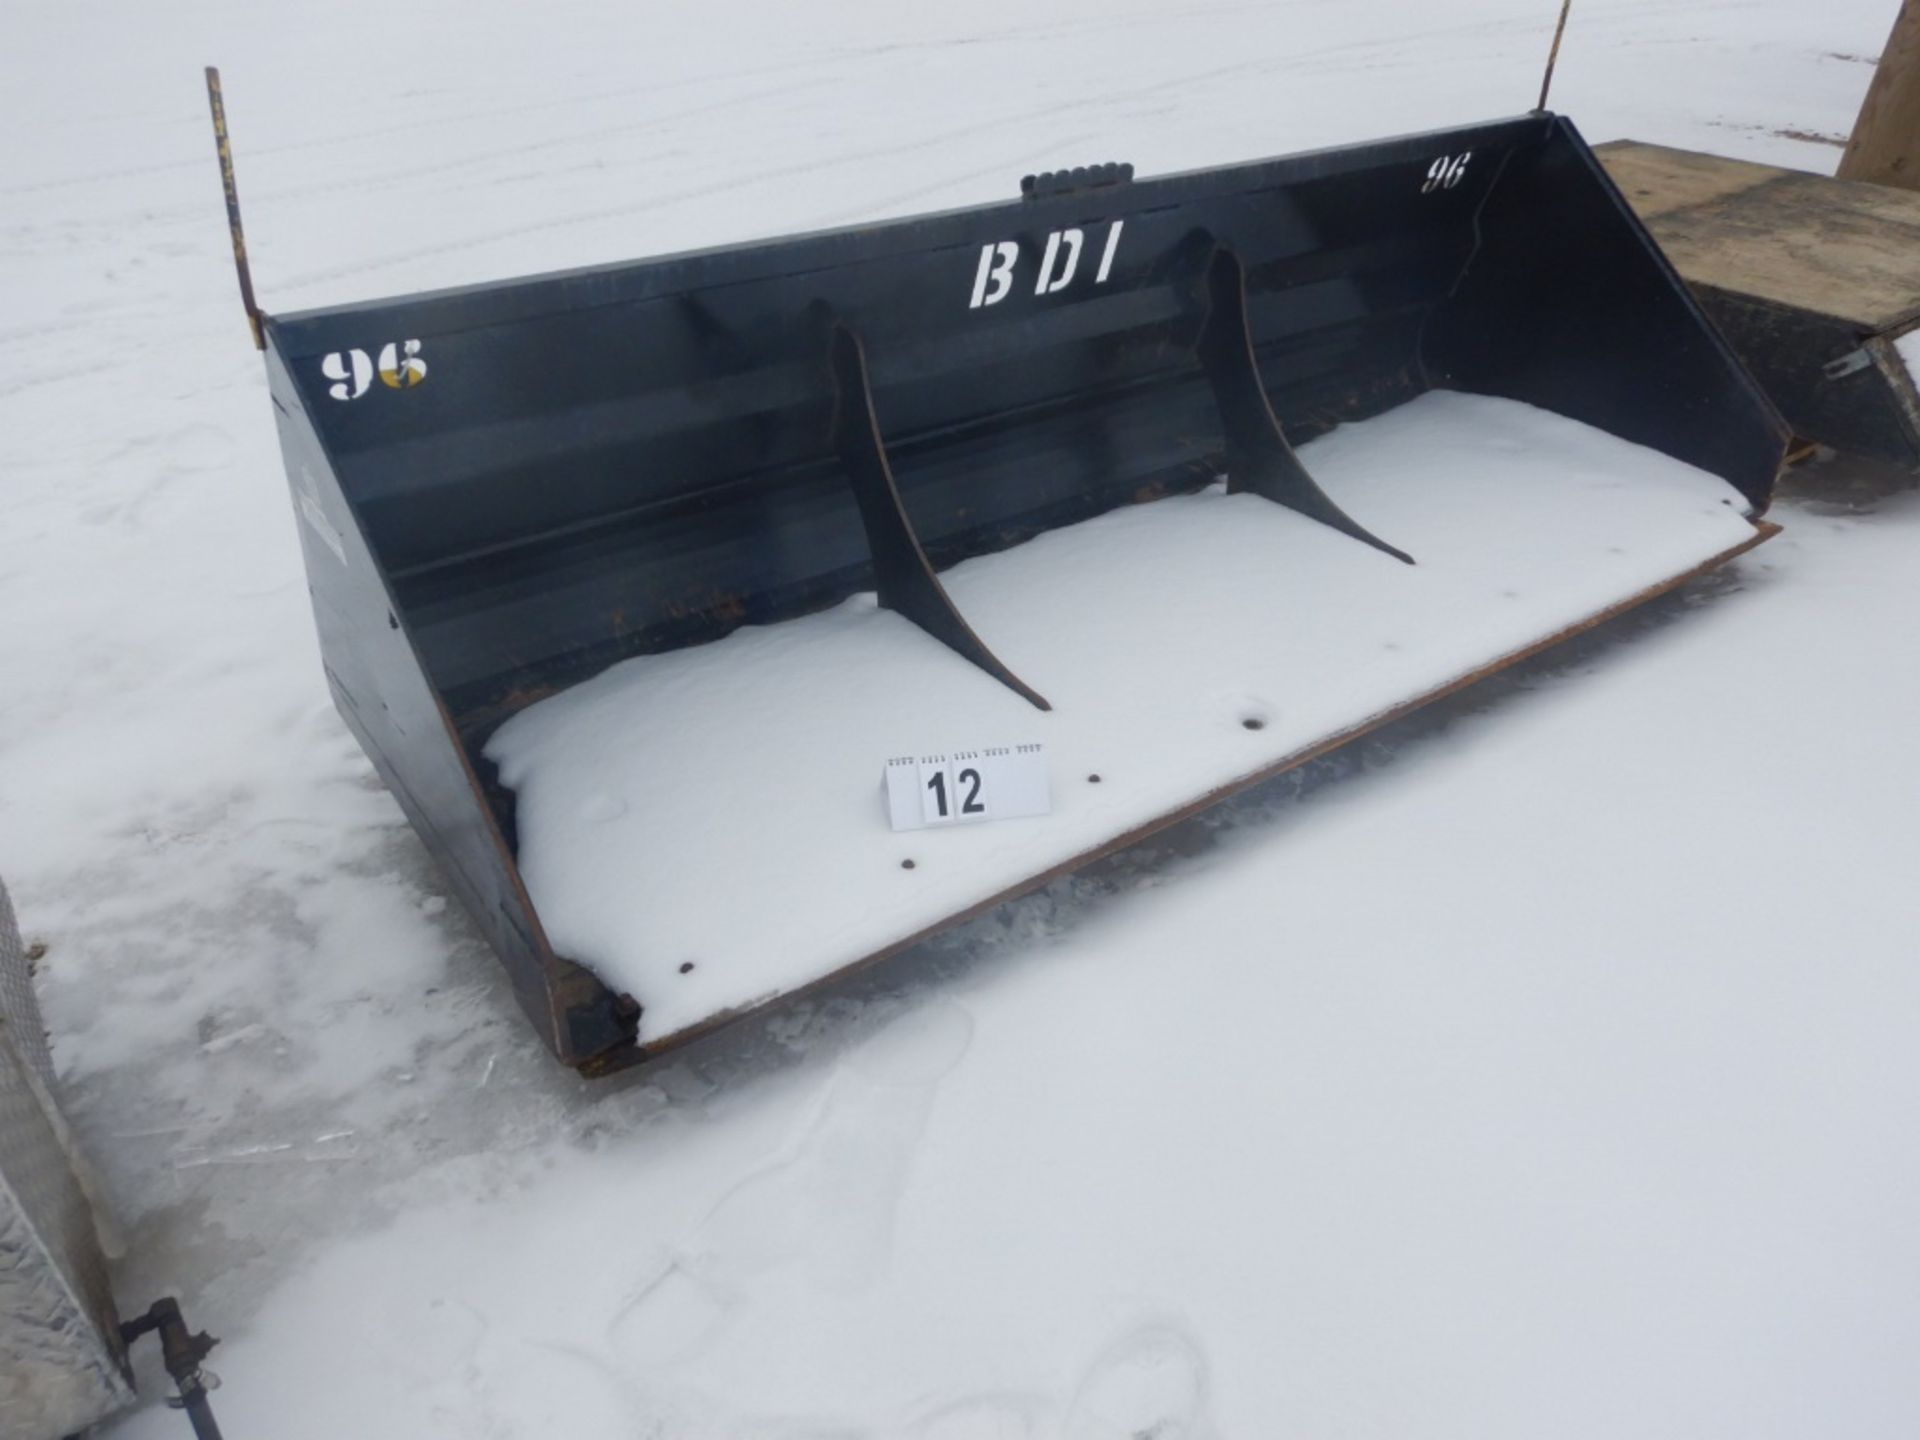 SNOW BUCKET TO FIT SKID STEER - 74"X19.2 CU FT, S/N 810917